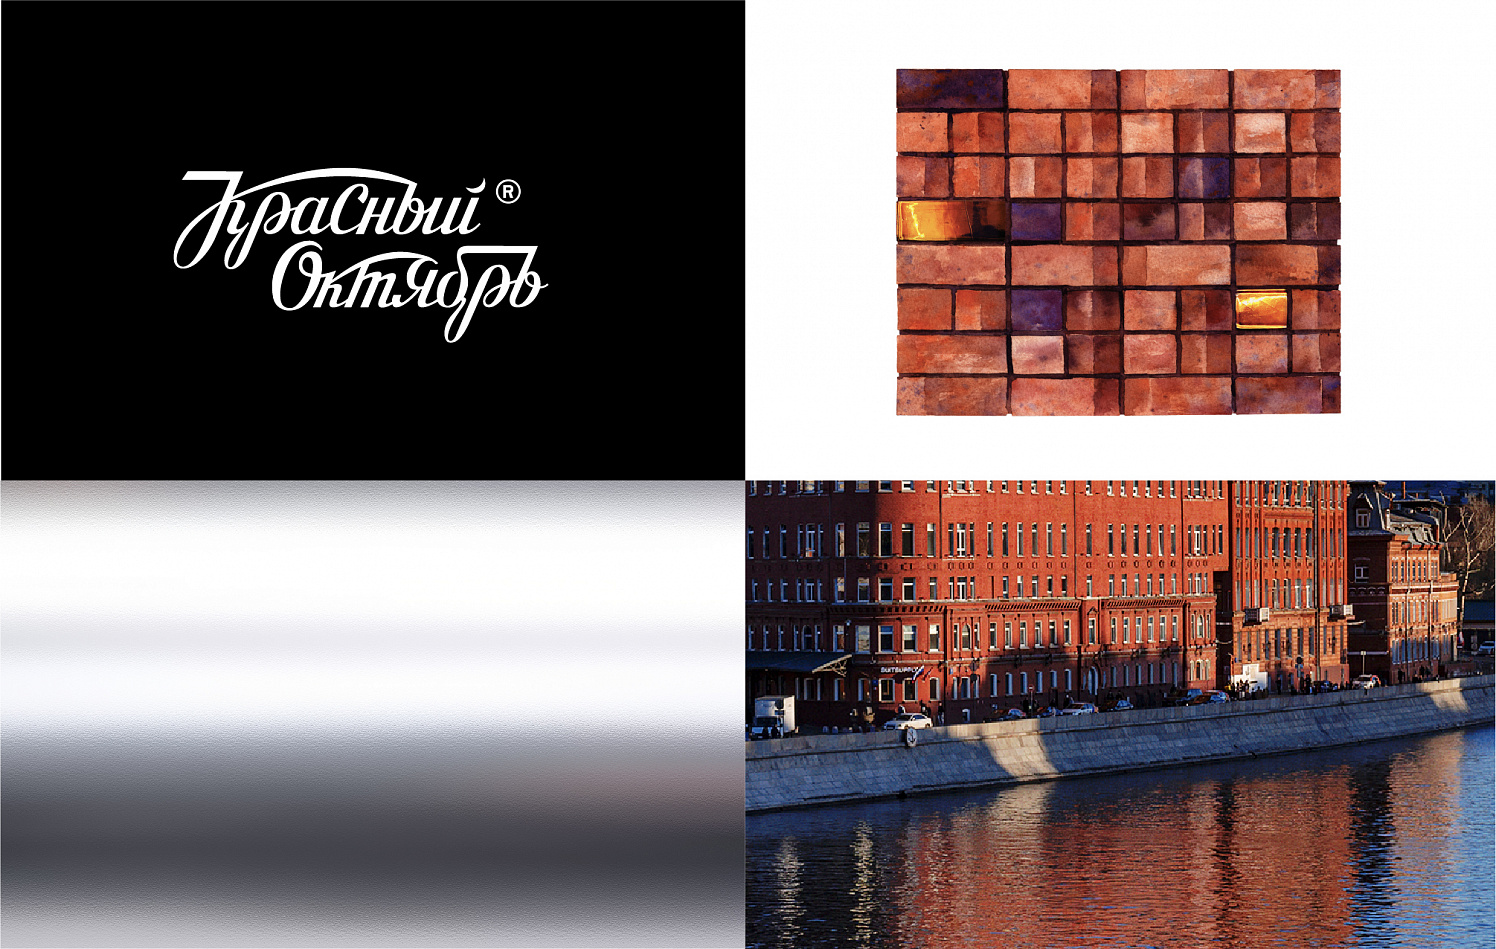 Красный Октябрь: Комплекс стратегических работ и фирменный стиль для бренда deluxe недвижимости - Портфолио Depot